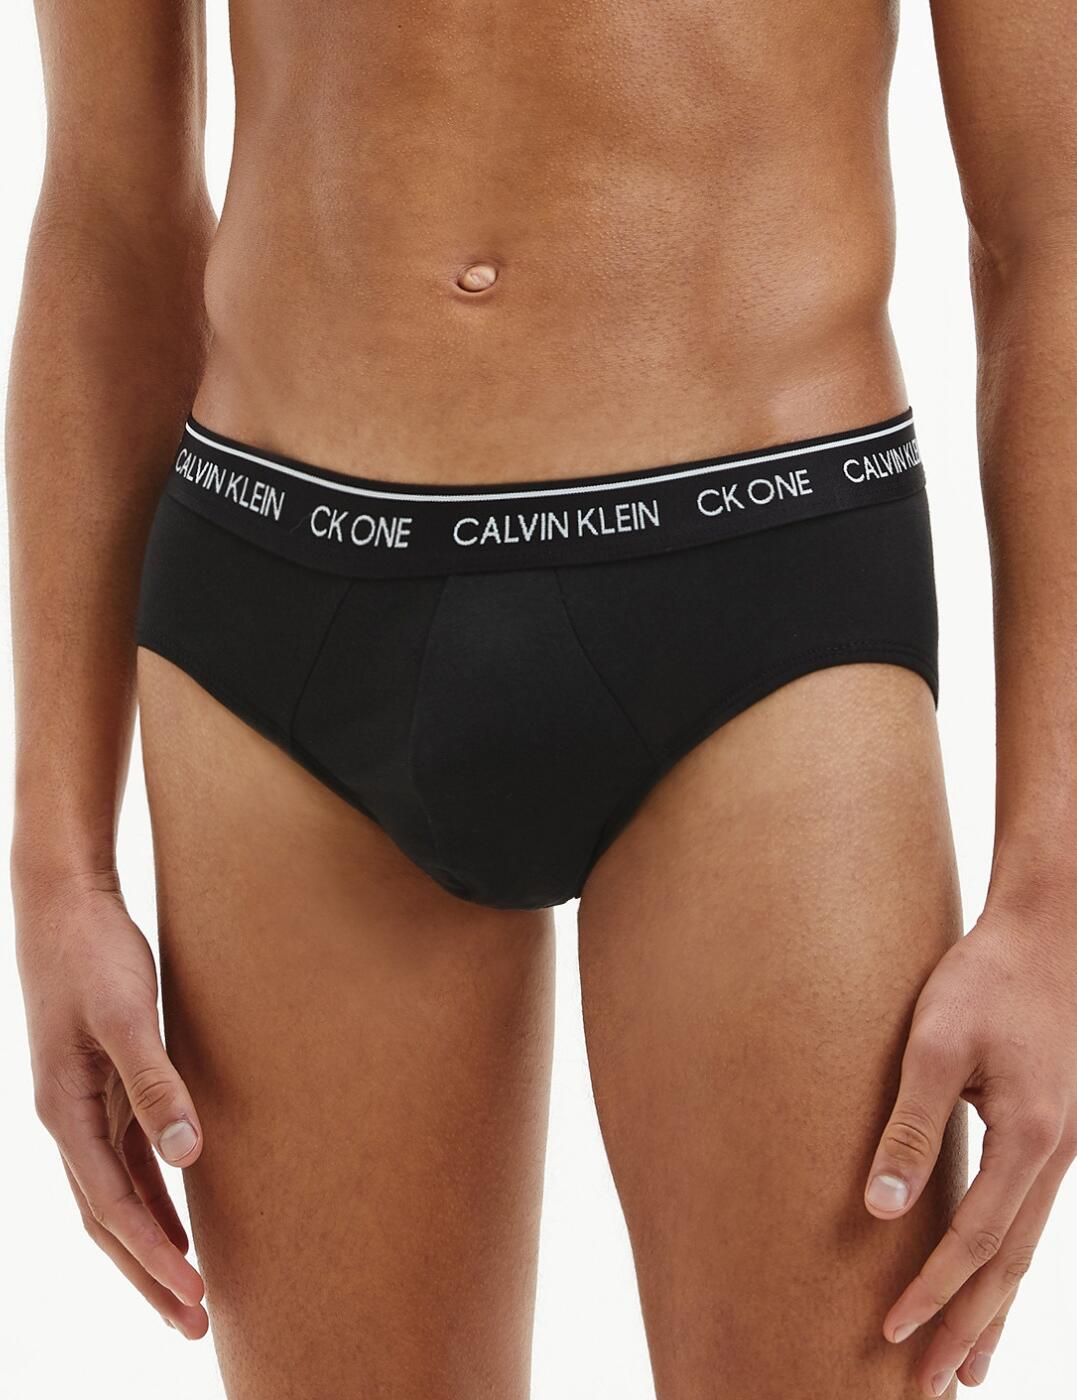 Calvin Klein Cotton Stretch 3-pack Hip Brief for Men